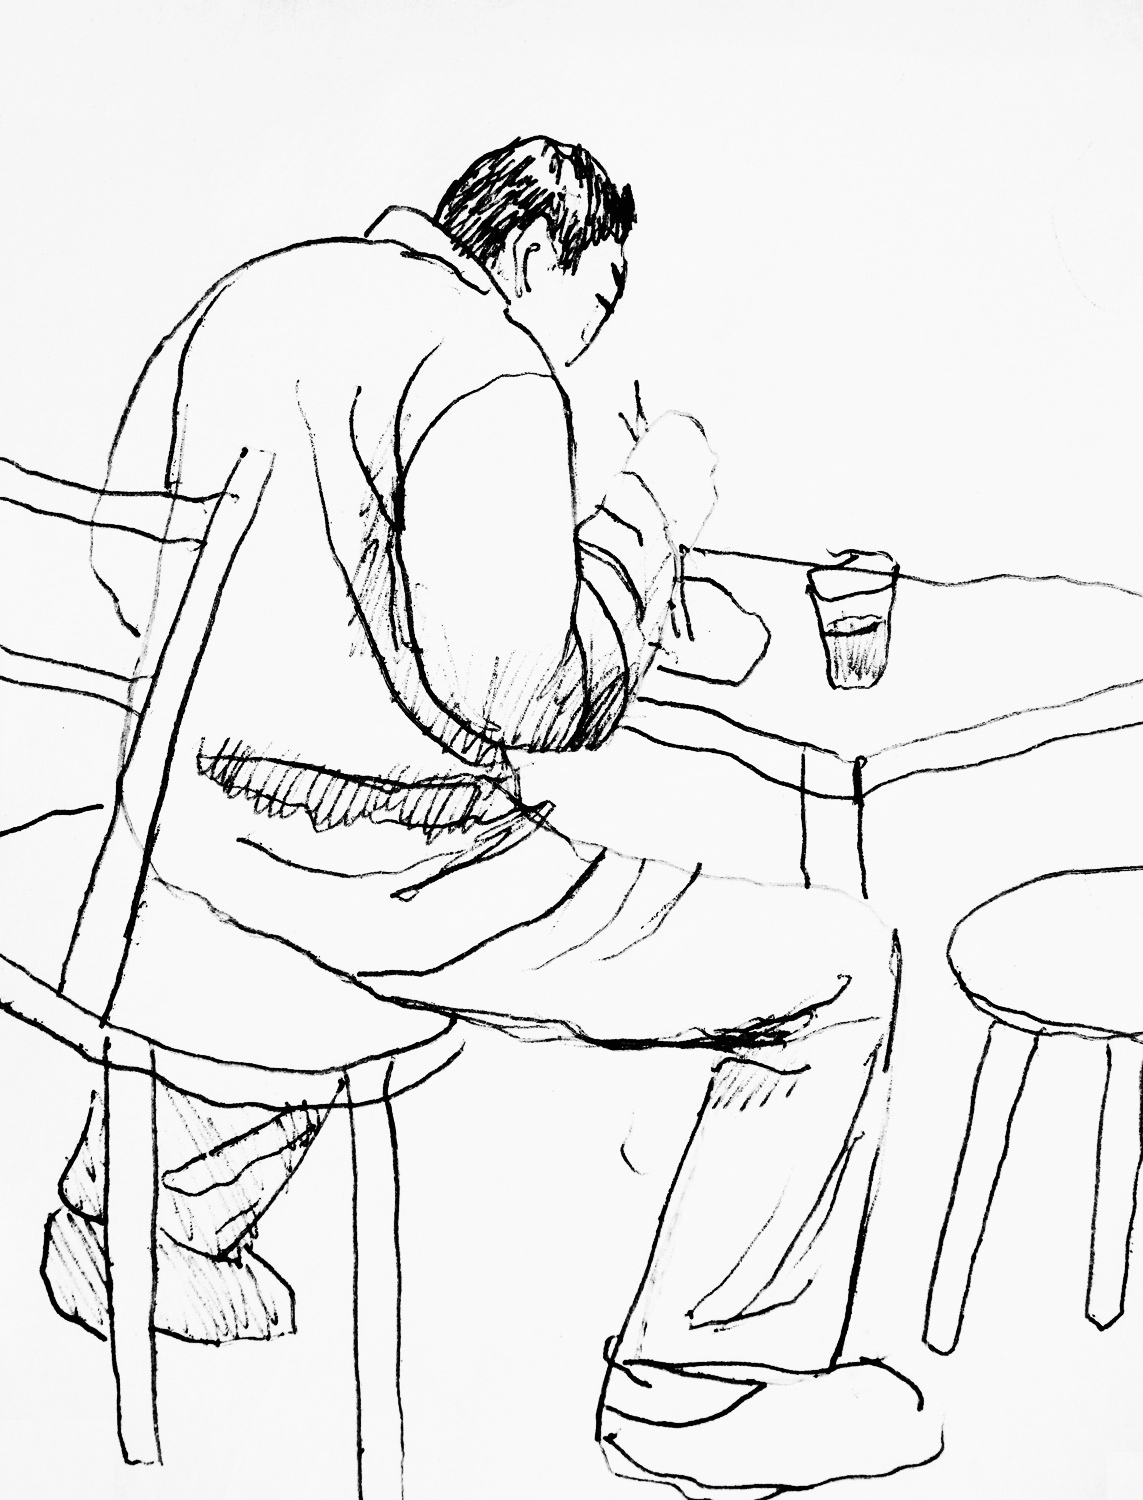 Sketch in a Noodle Bar, Tokyo